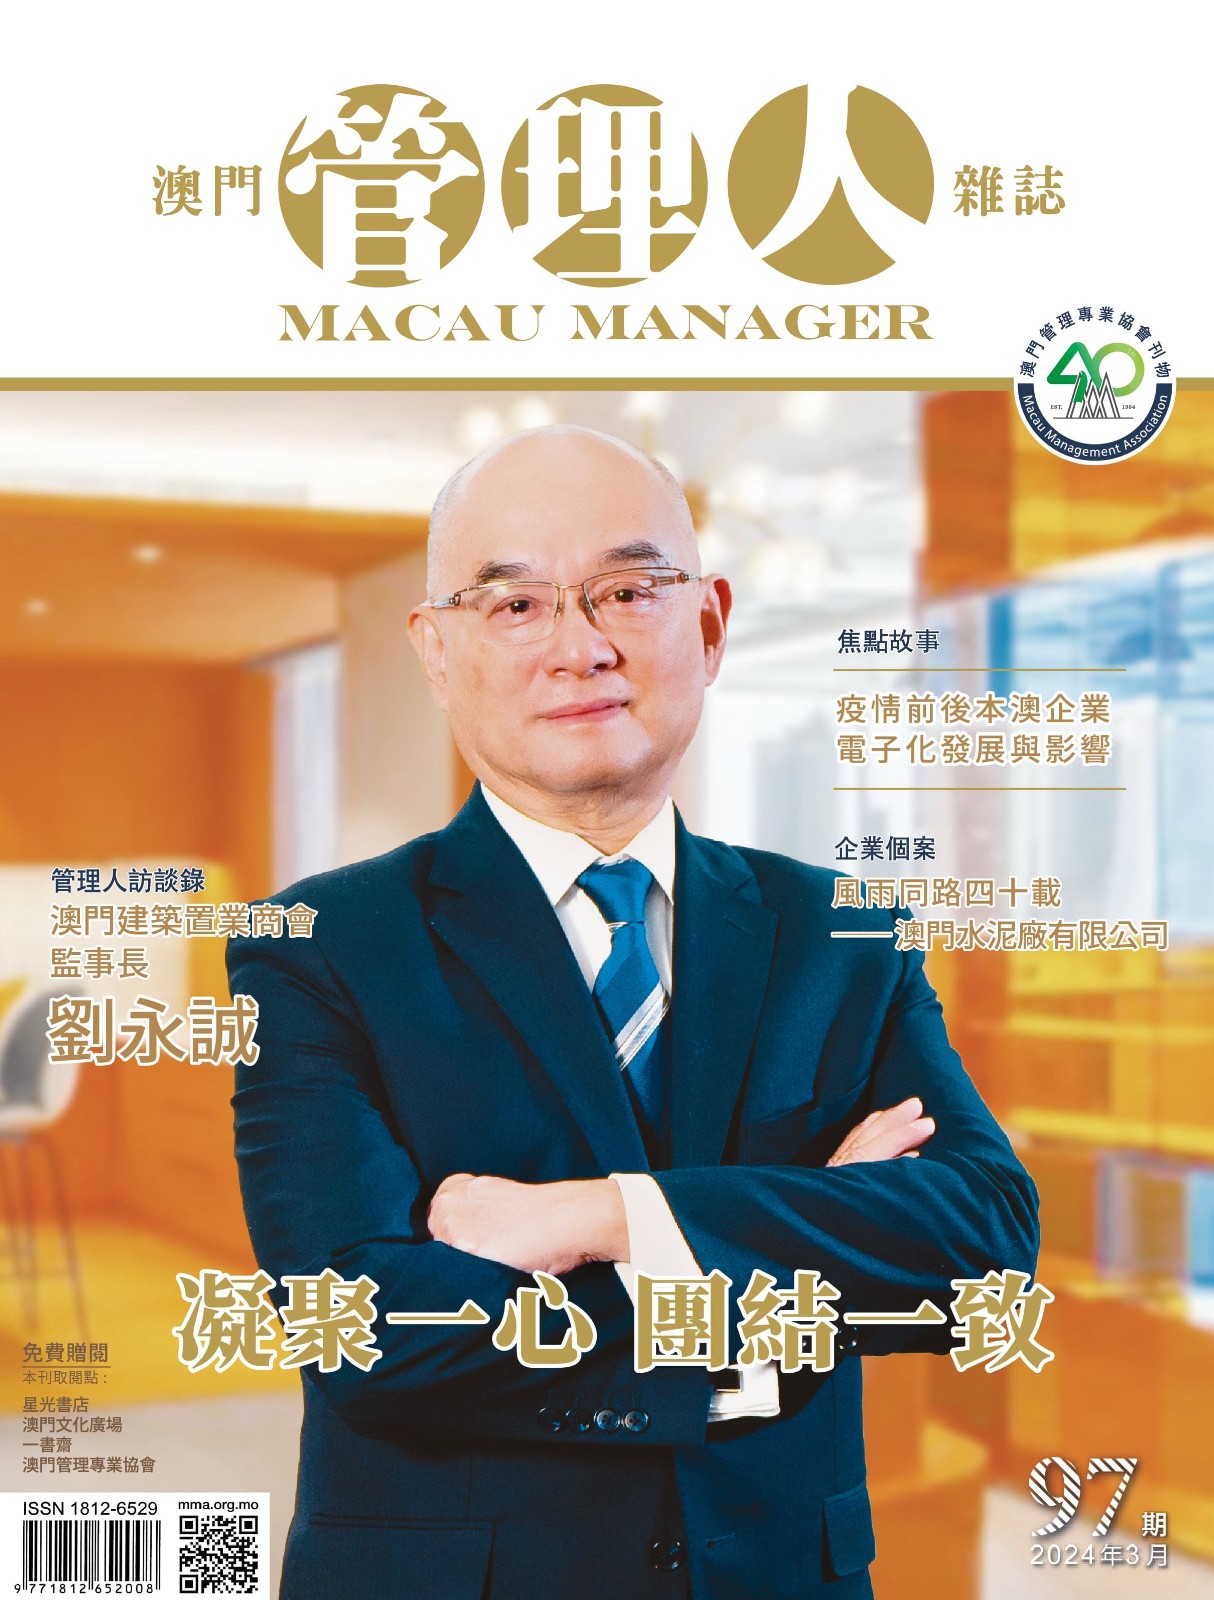 Macau Manager